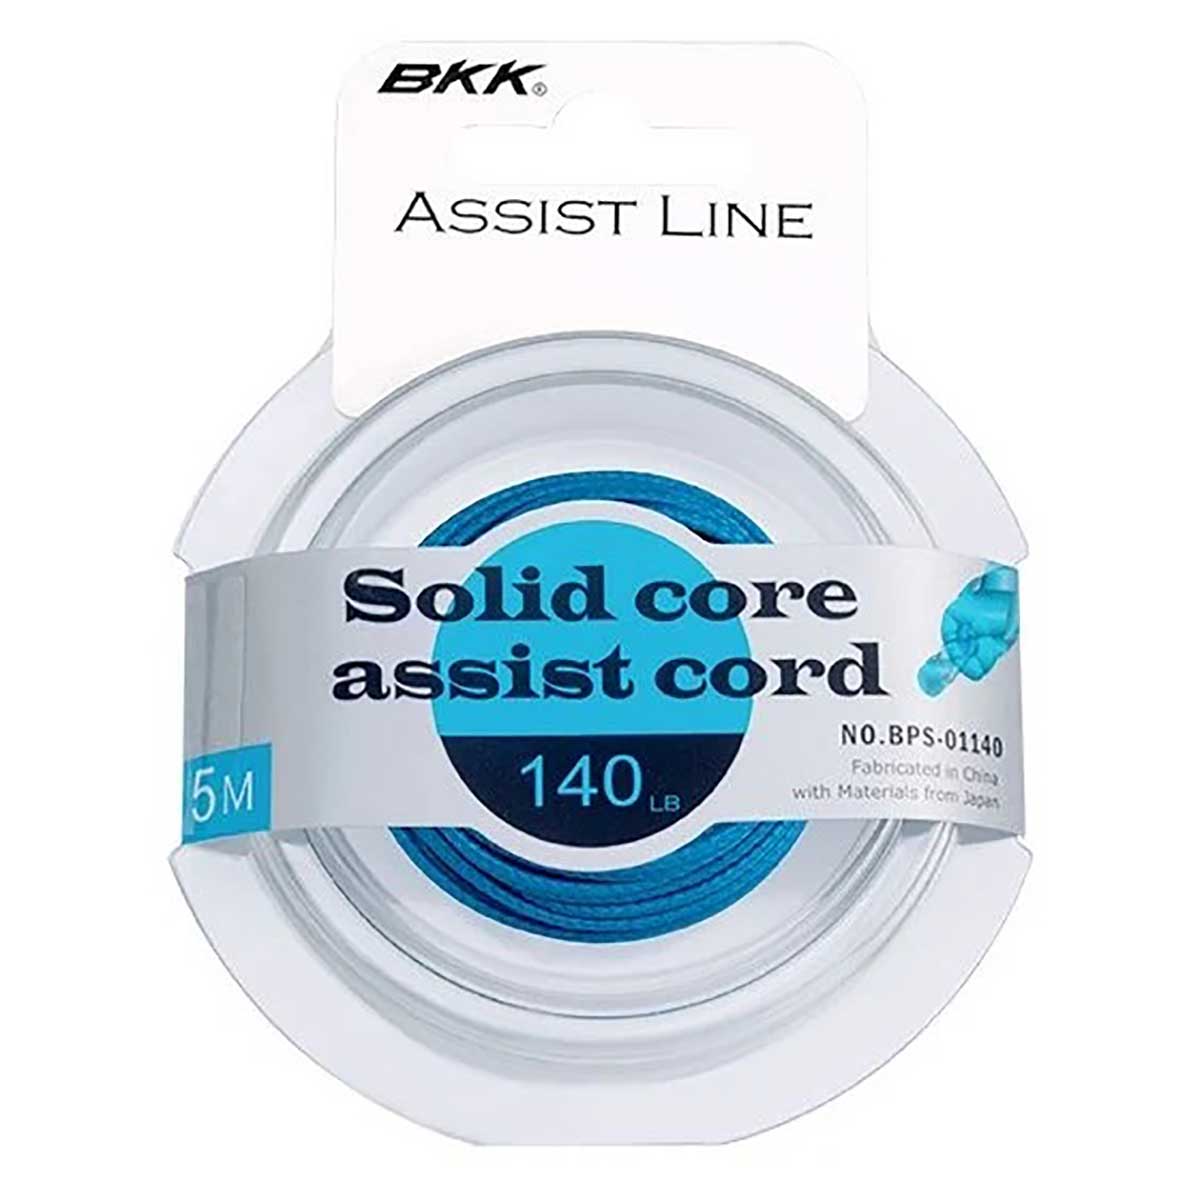 BKK Solid Core Assist Cord Asist İpi,bkk kalitesinde asist iğnesi bağlamak için kullanılan örgü kordon Özellikle jigging uygulamaları için kullanılan asist ipi